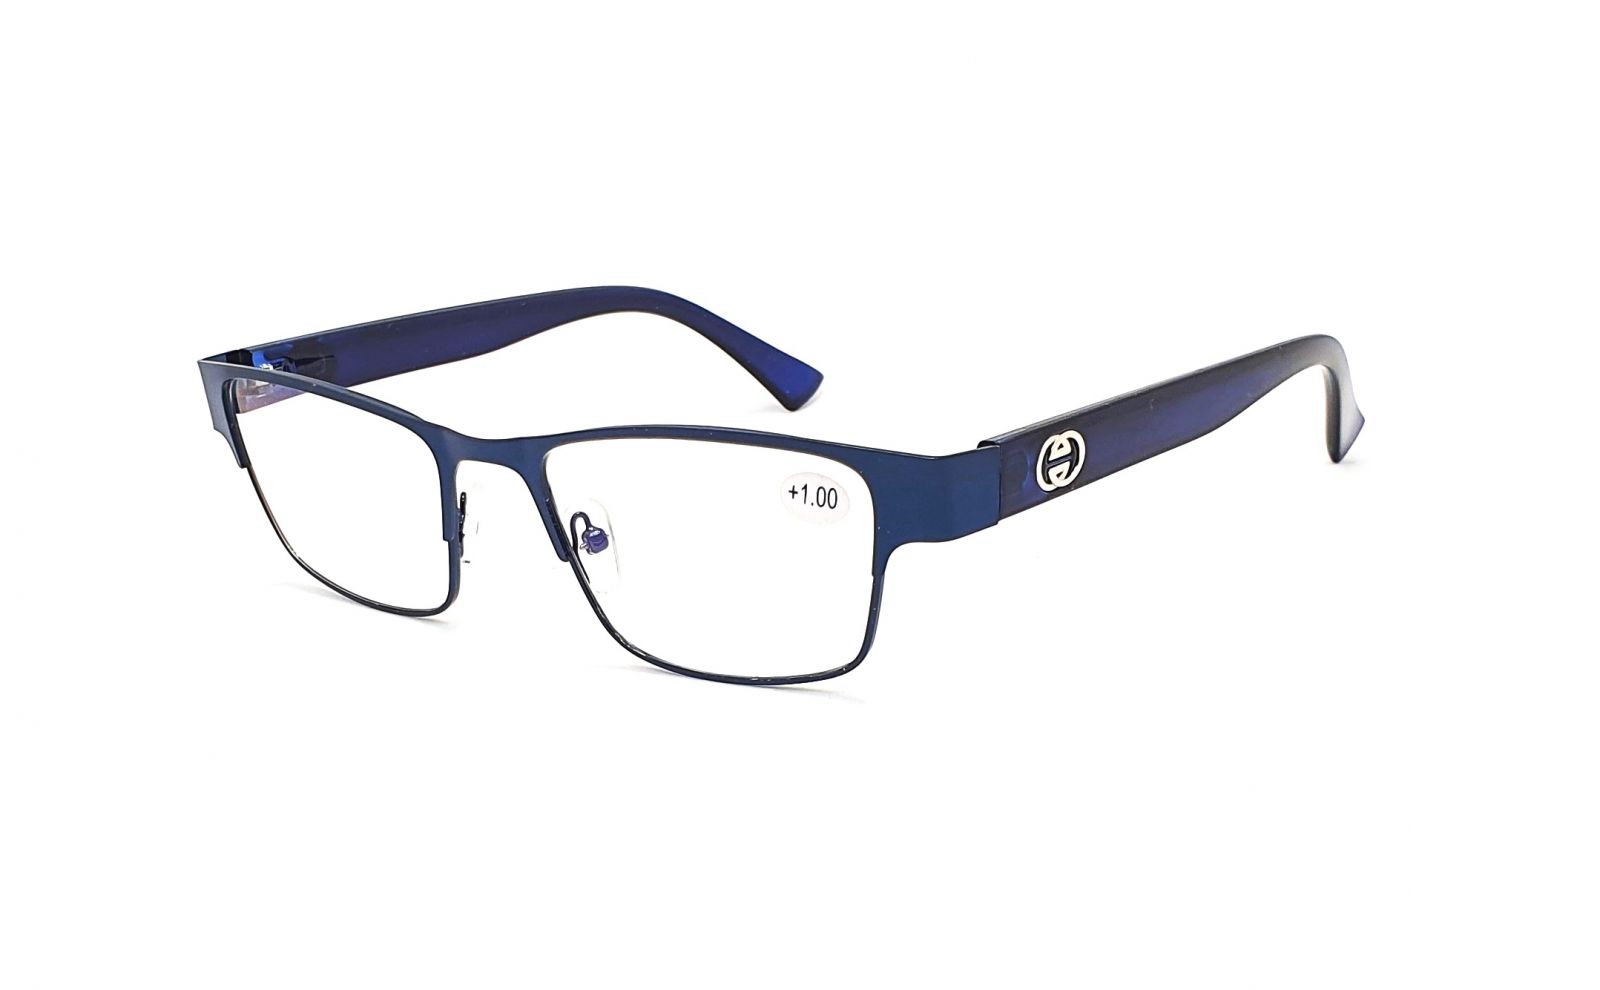 Dioptrické brýle OK231 +1,00 blue s antireflexní vrstvou